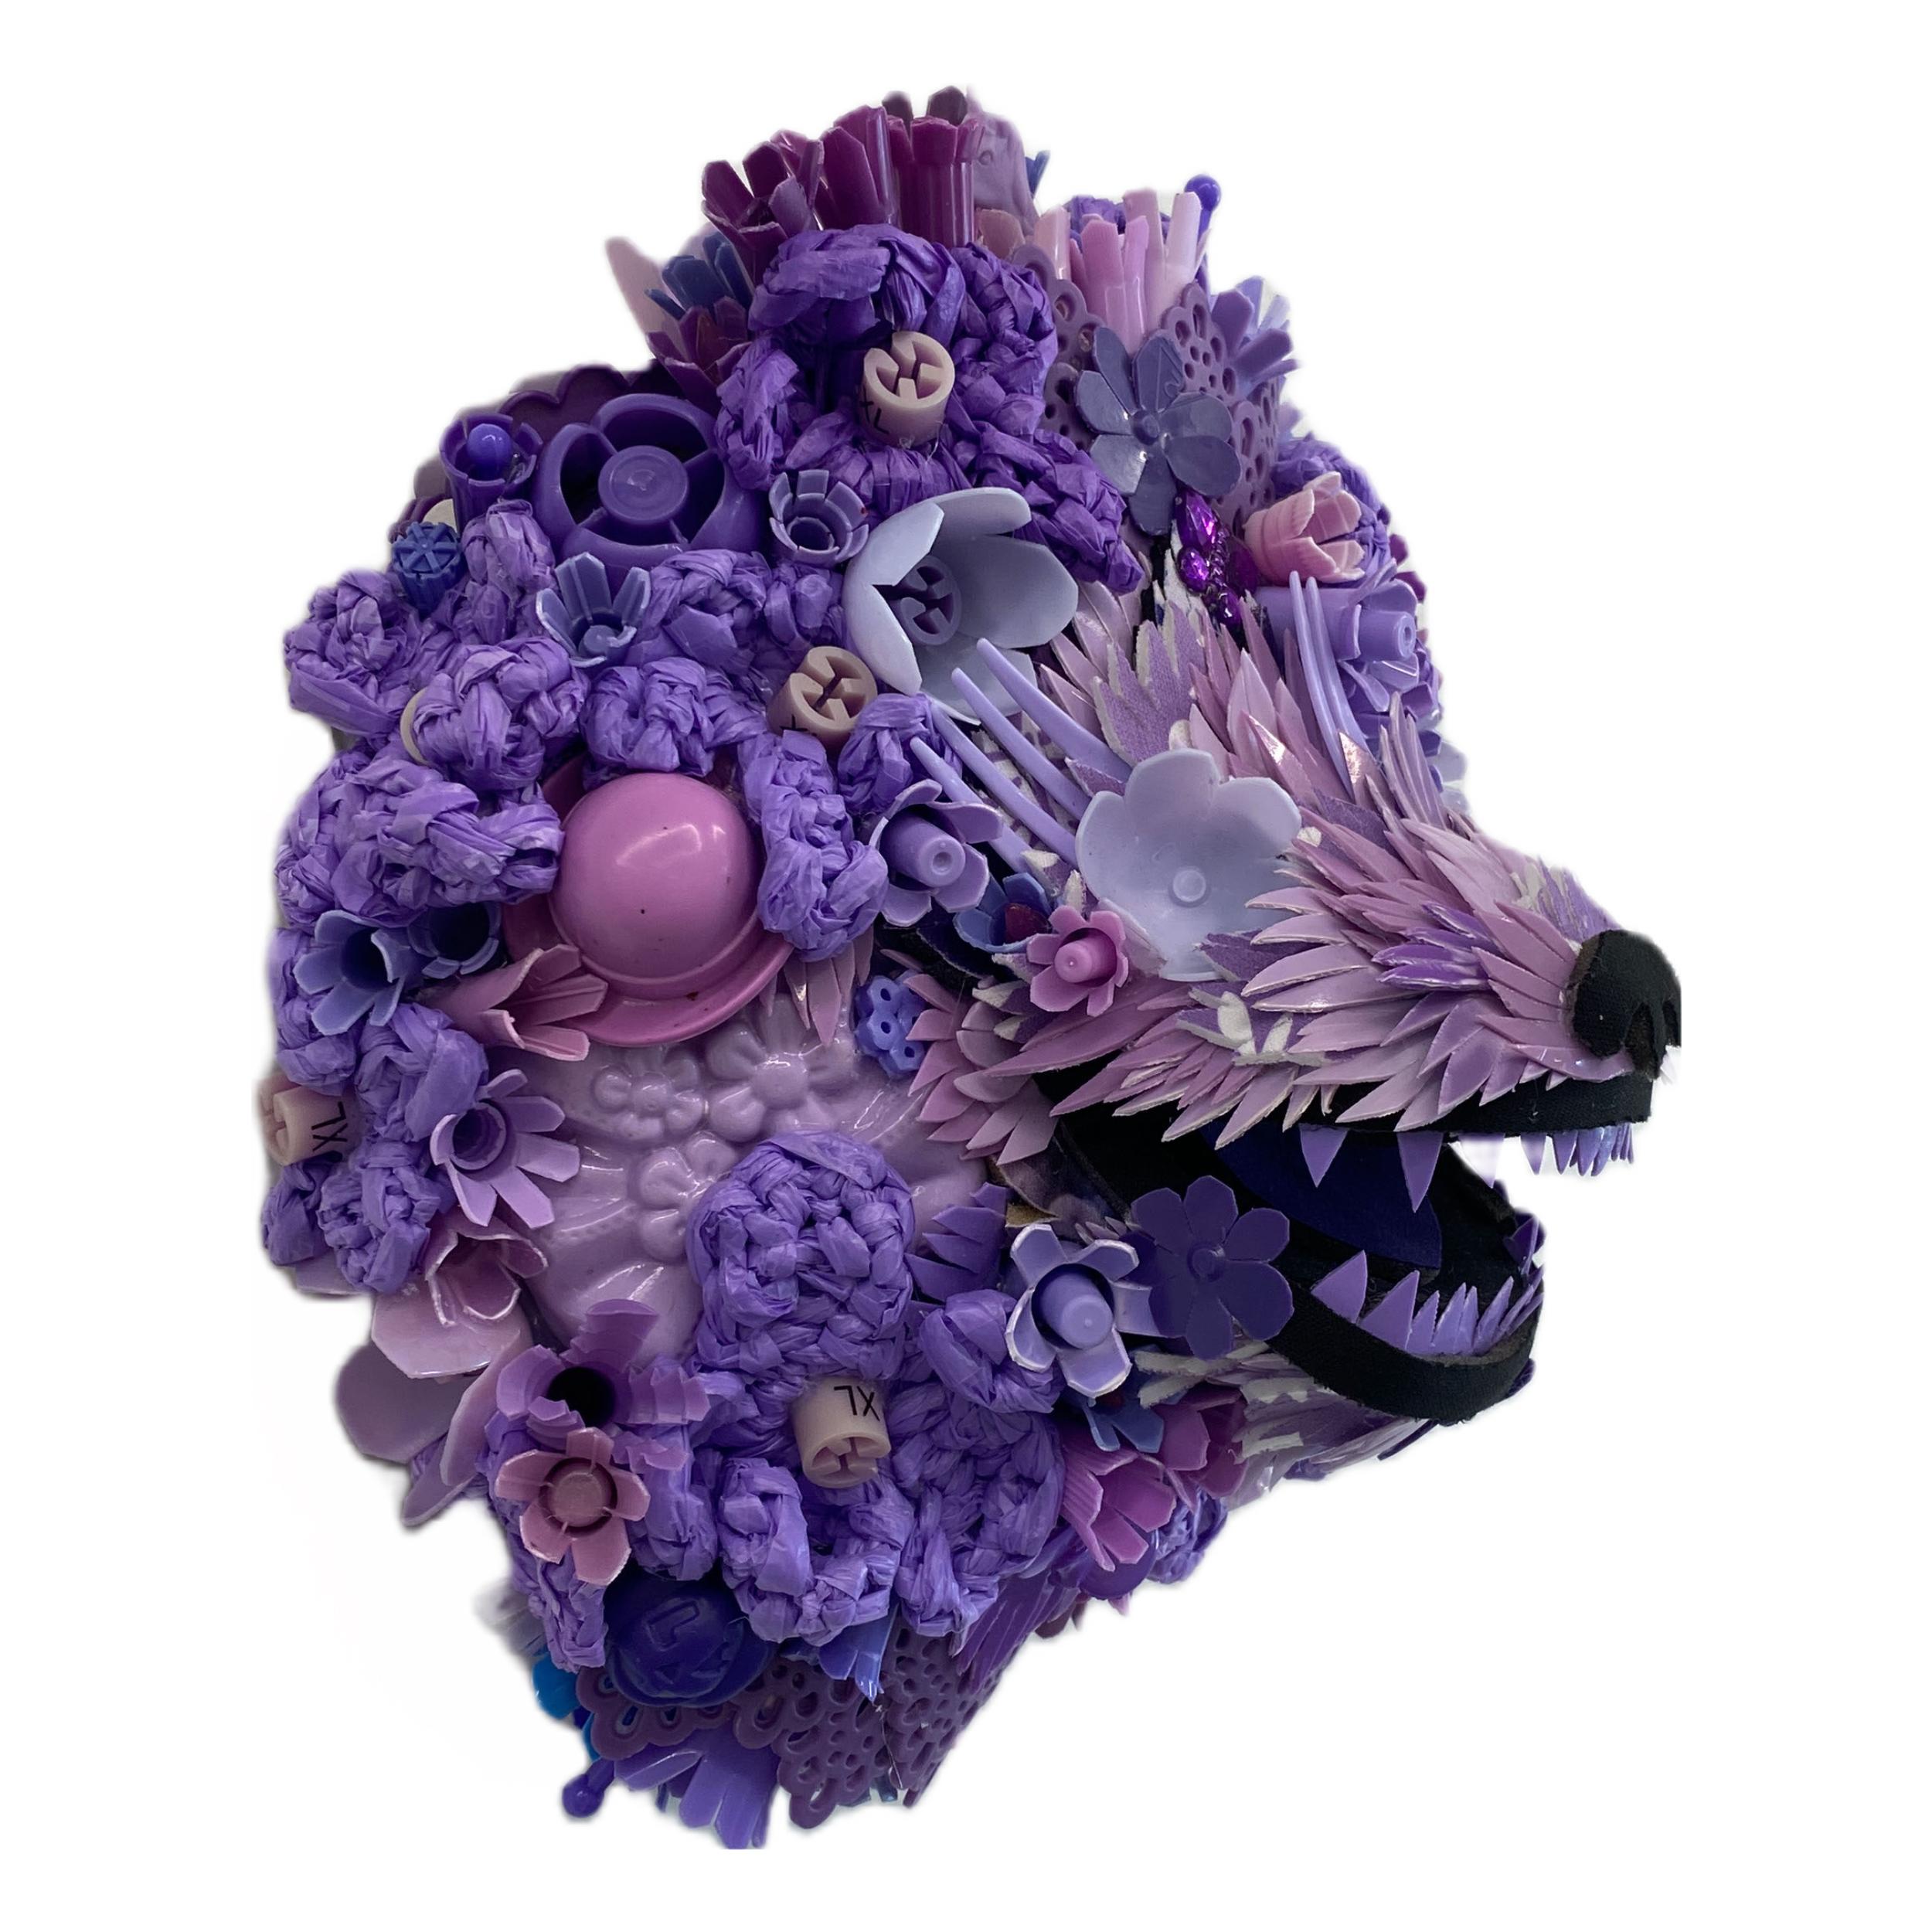 Hydrangea-Hunde, Lavendel, zeitgenössische Tierskulptur, recycelte Materialien  – Sculpture von Calder Kamin